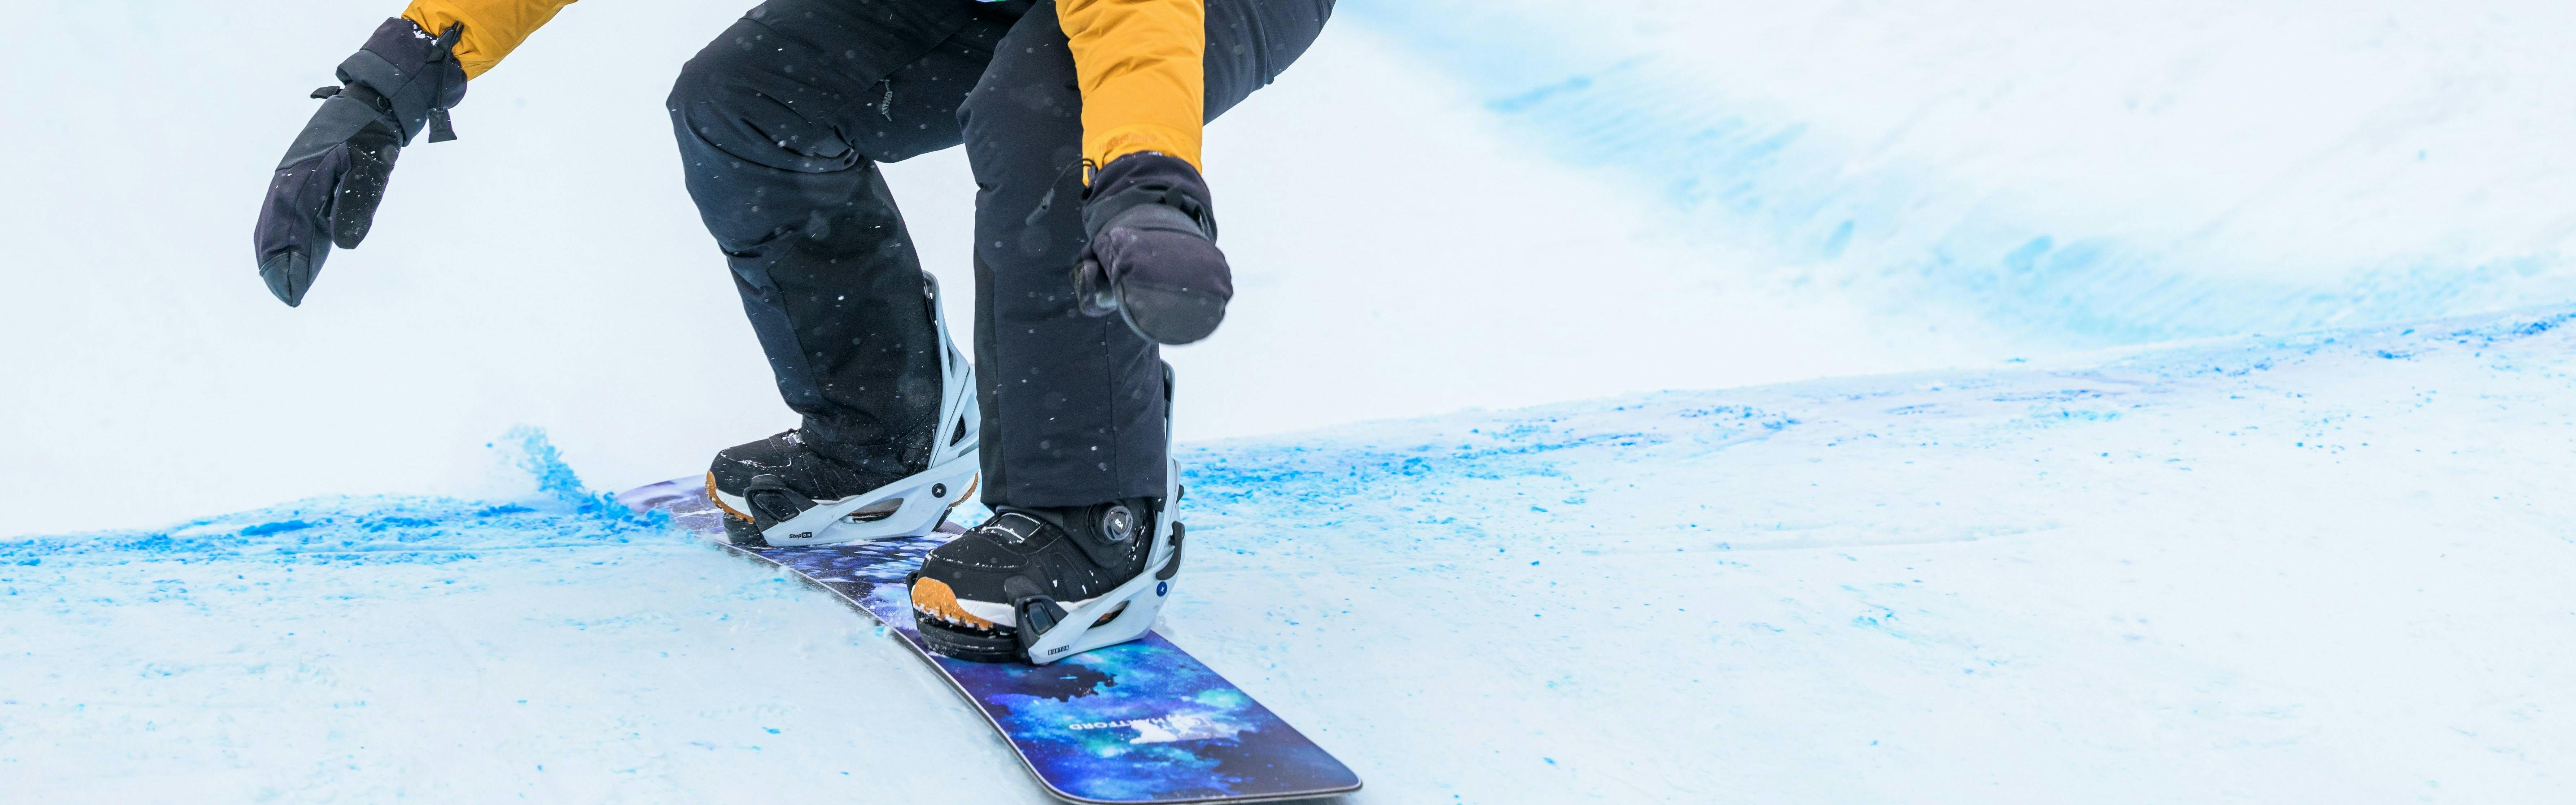 Step On Update  Burton Snowboards US